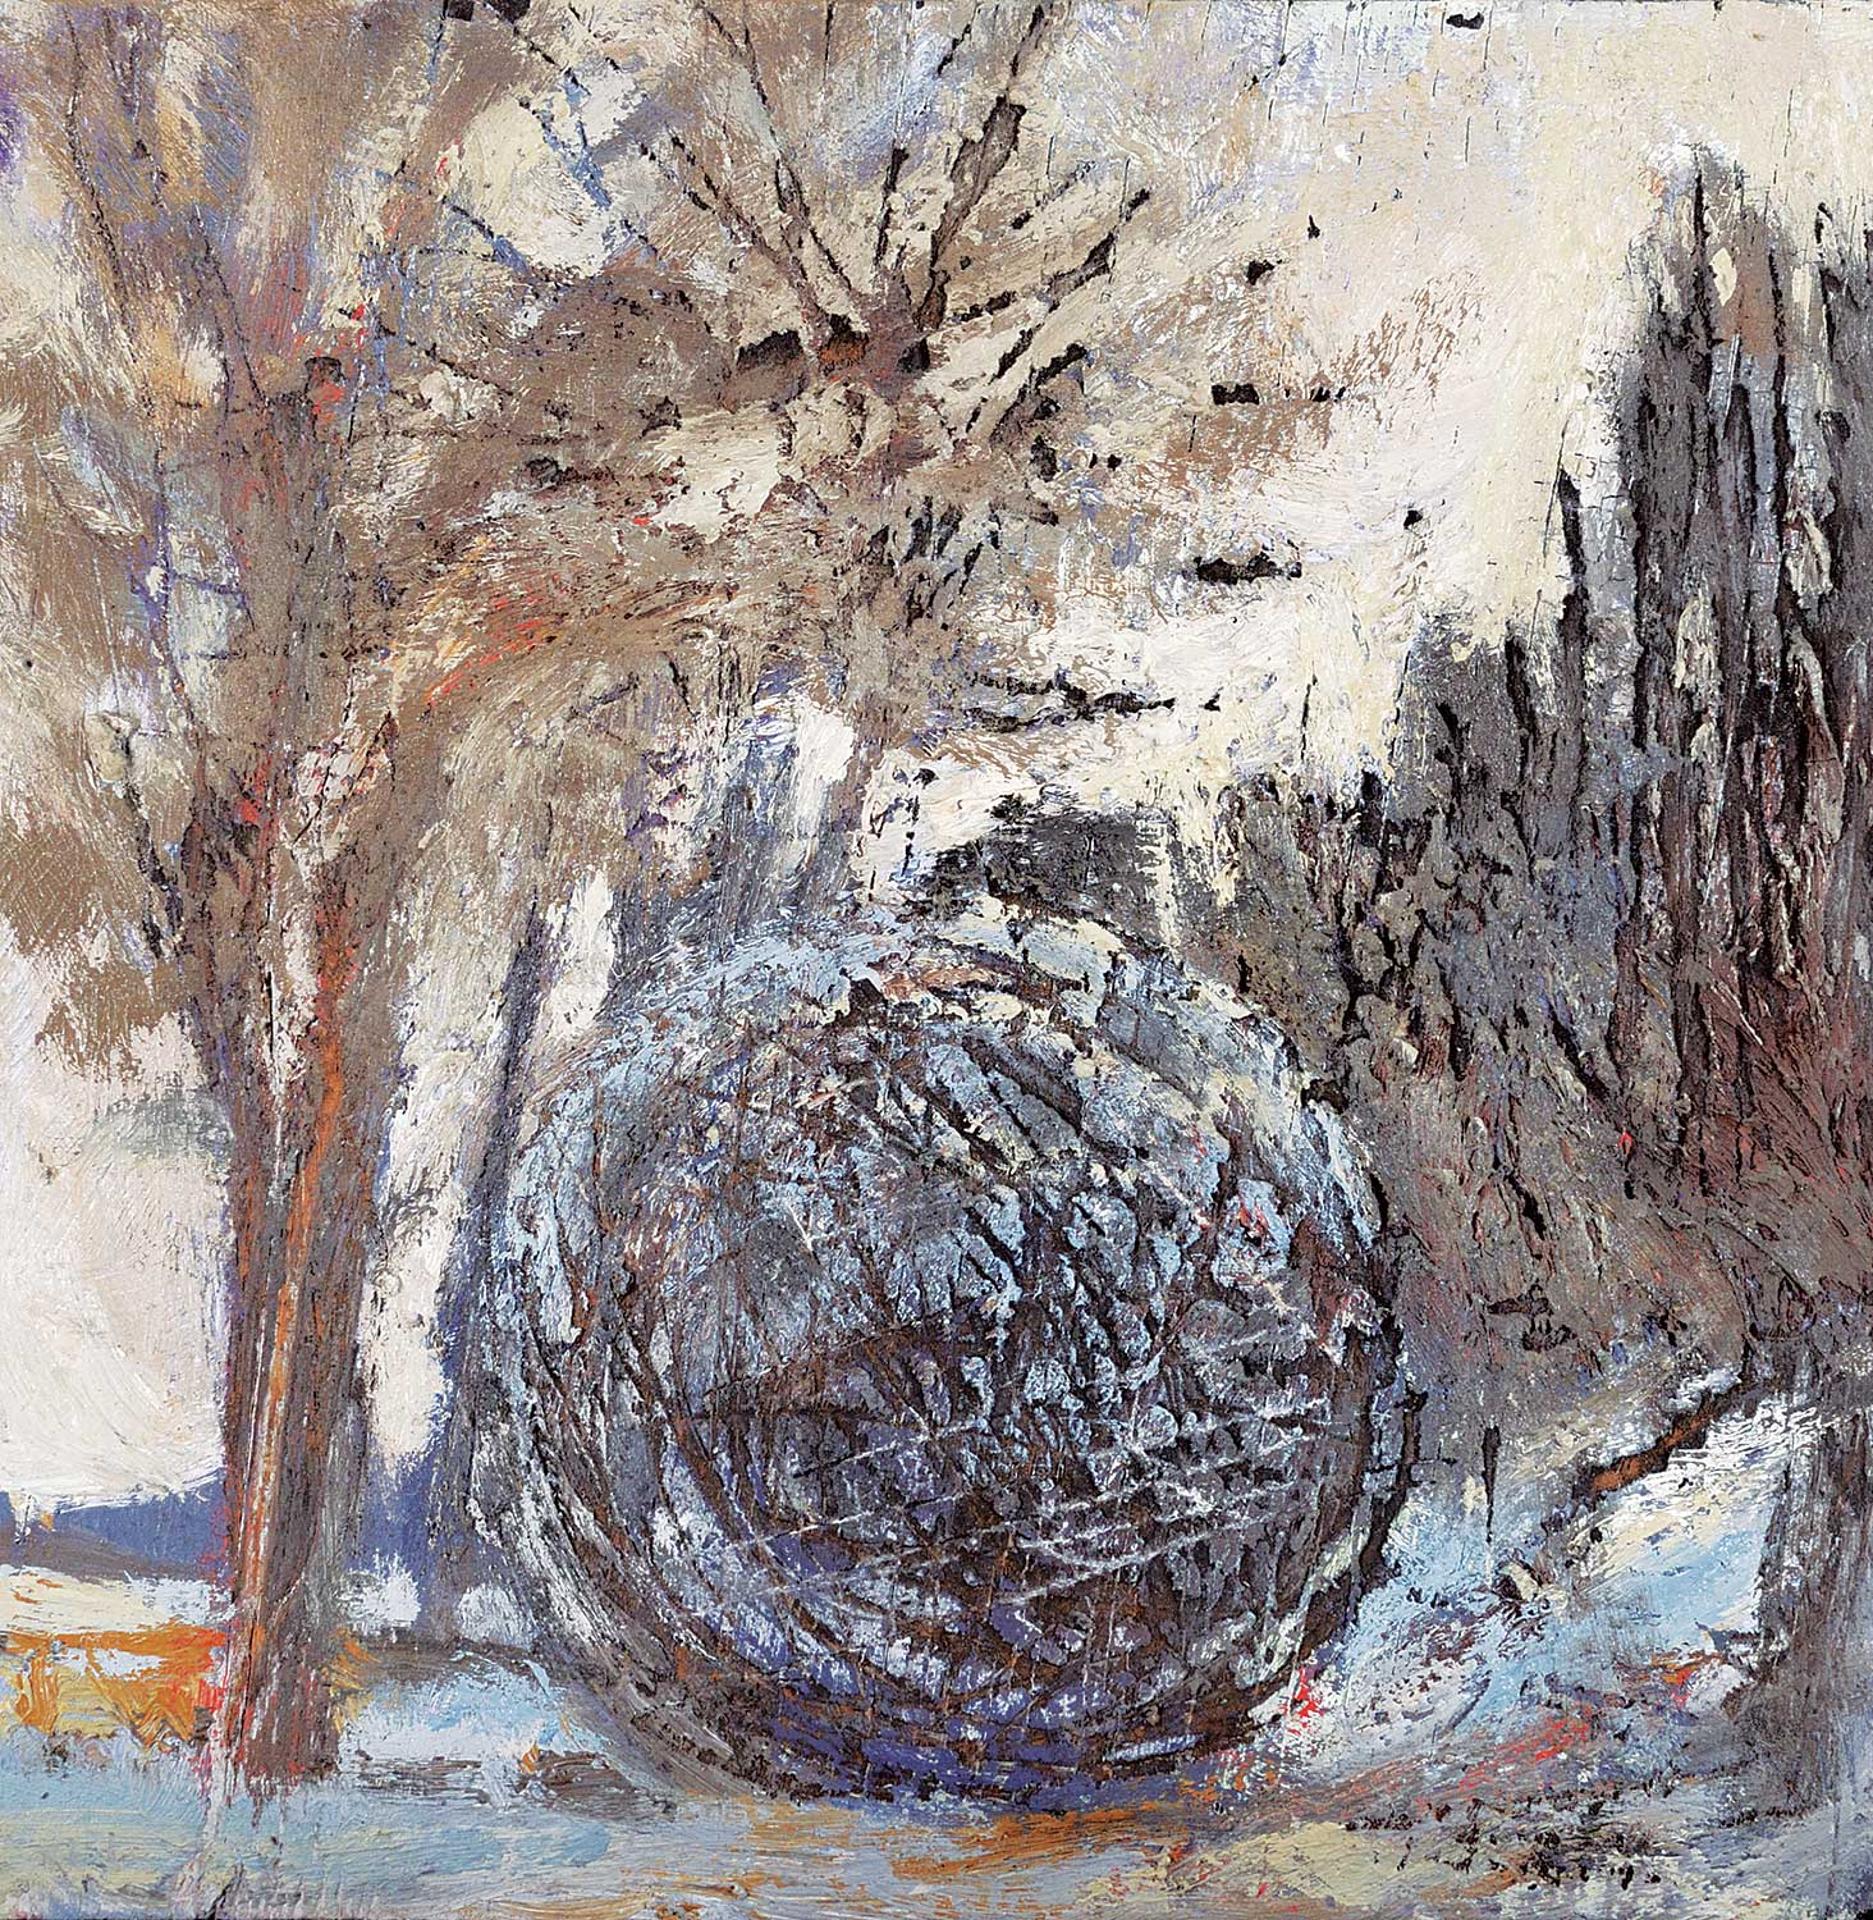 Peter von Tiesenhausen (1959) - Winter Sphere